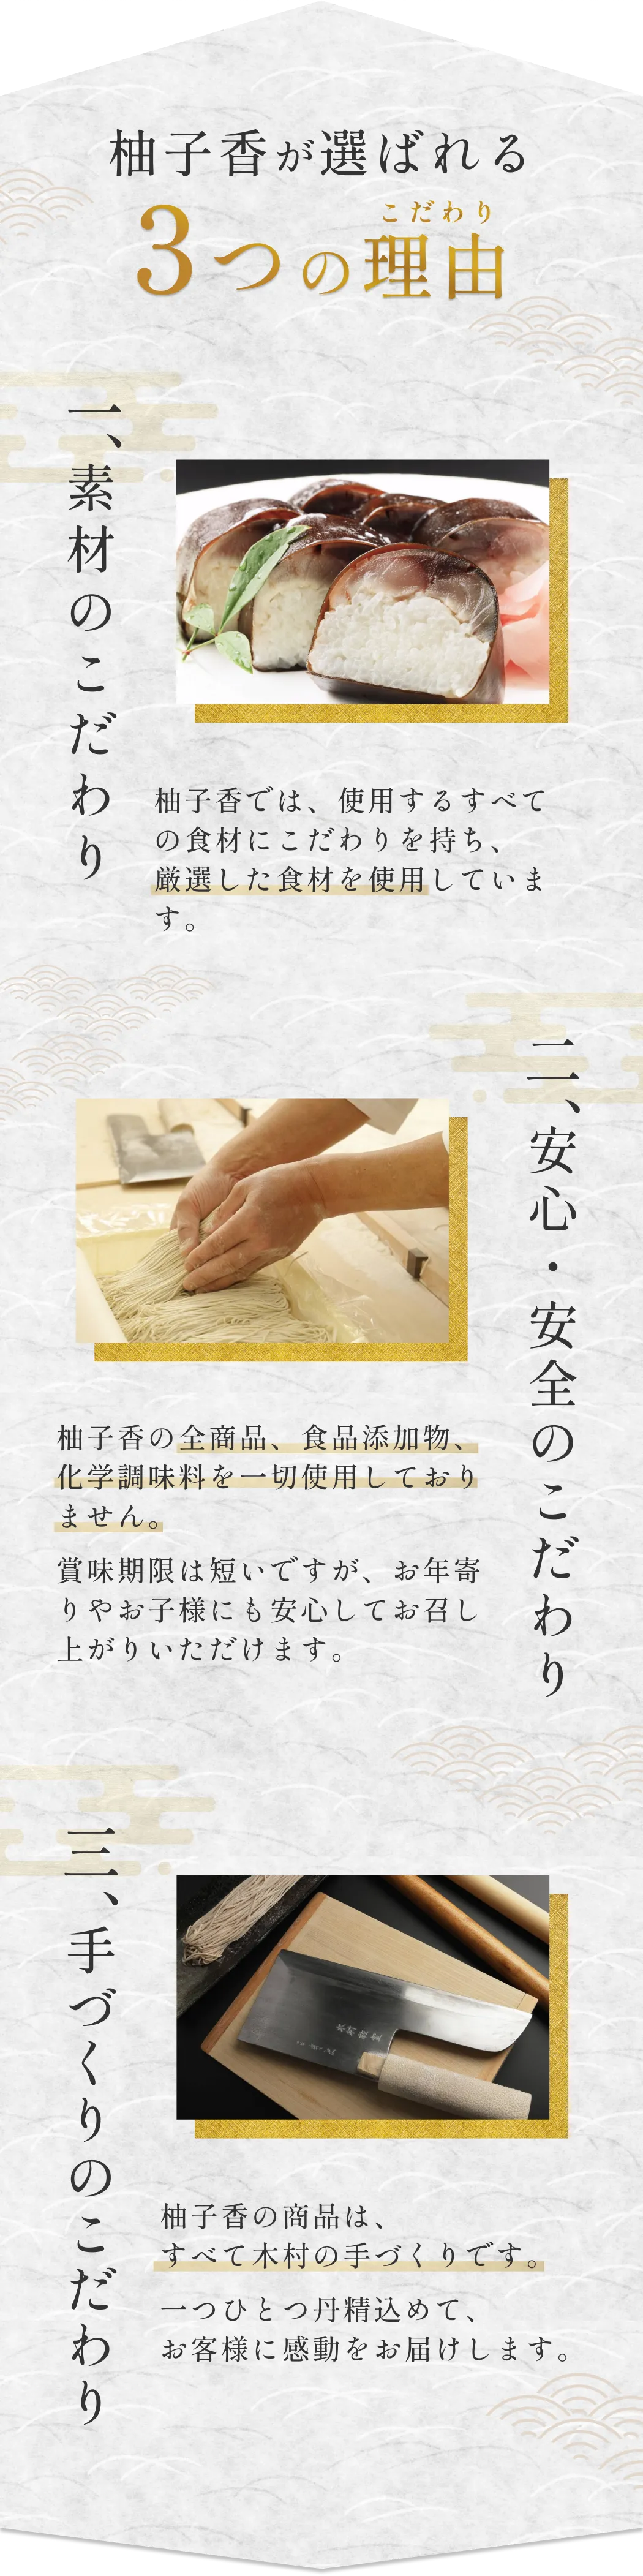 柚子香が選ばれる3つの理由 素材 安心 手作り